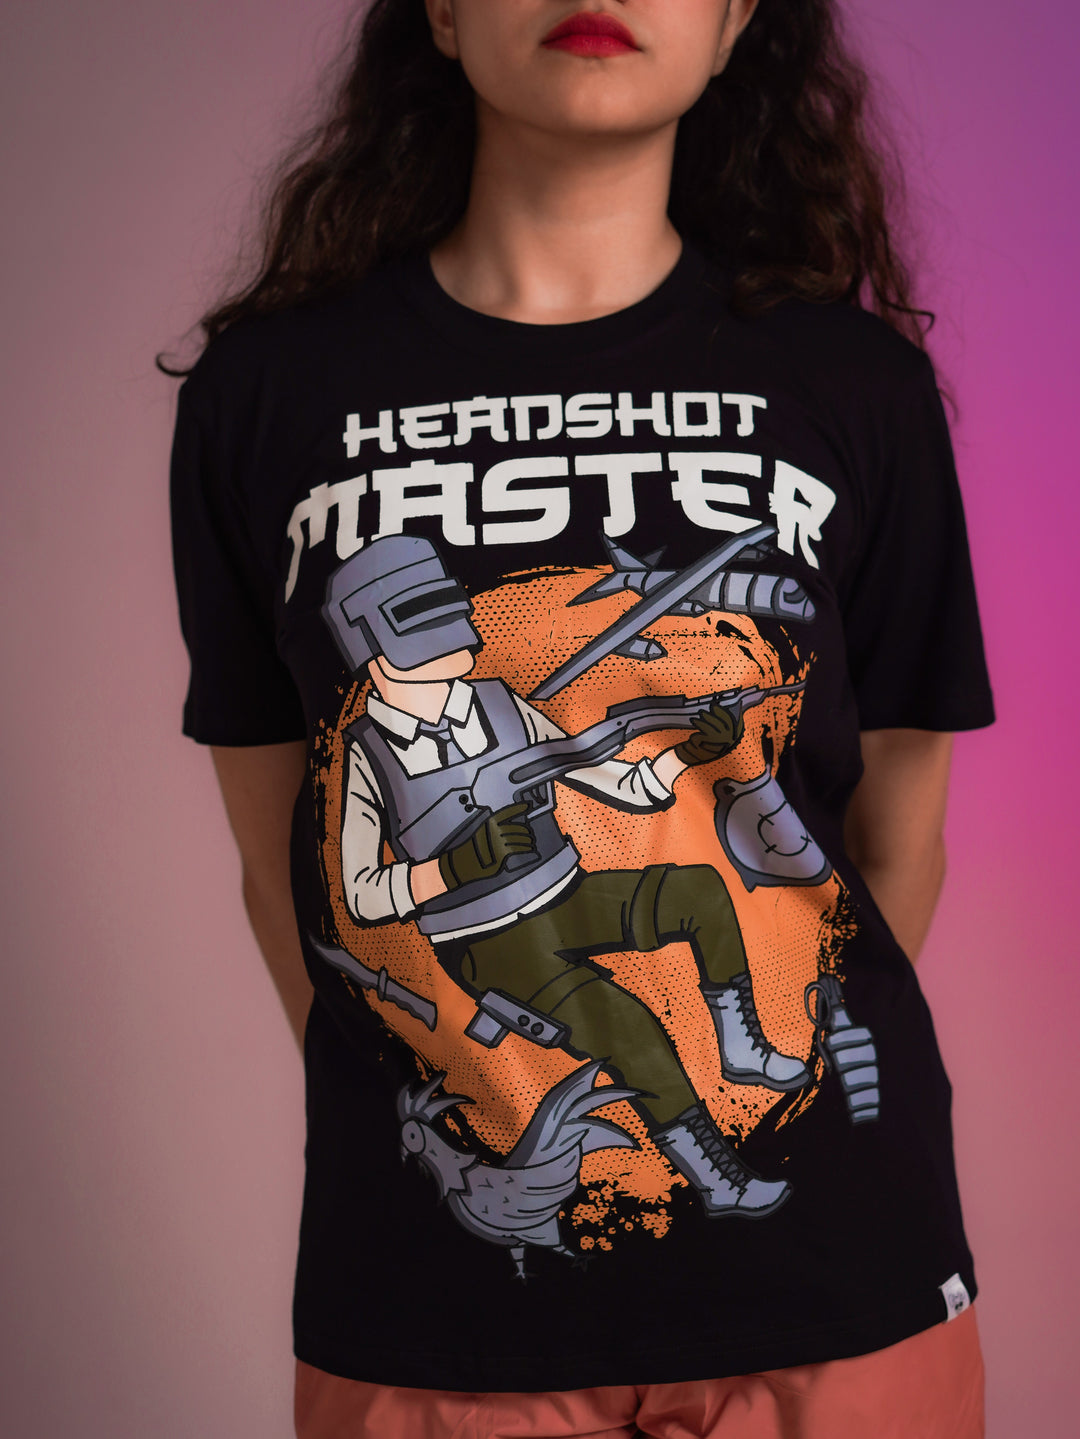 Headshot Master Regular T-shirt Women